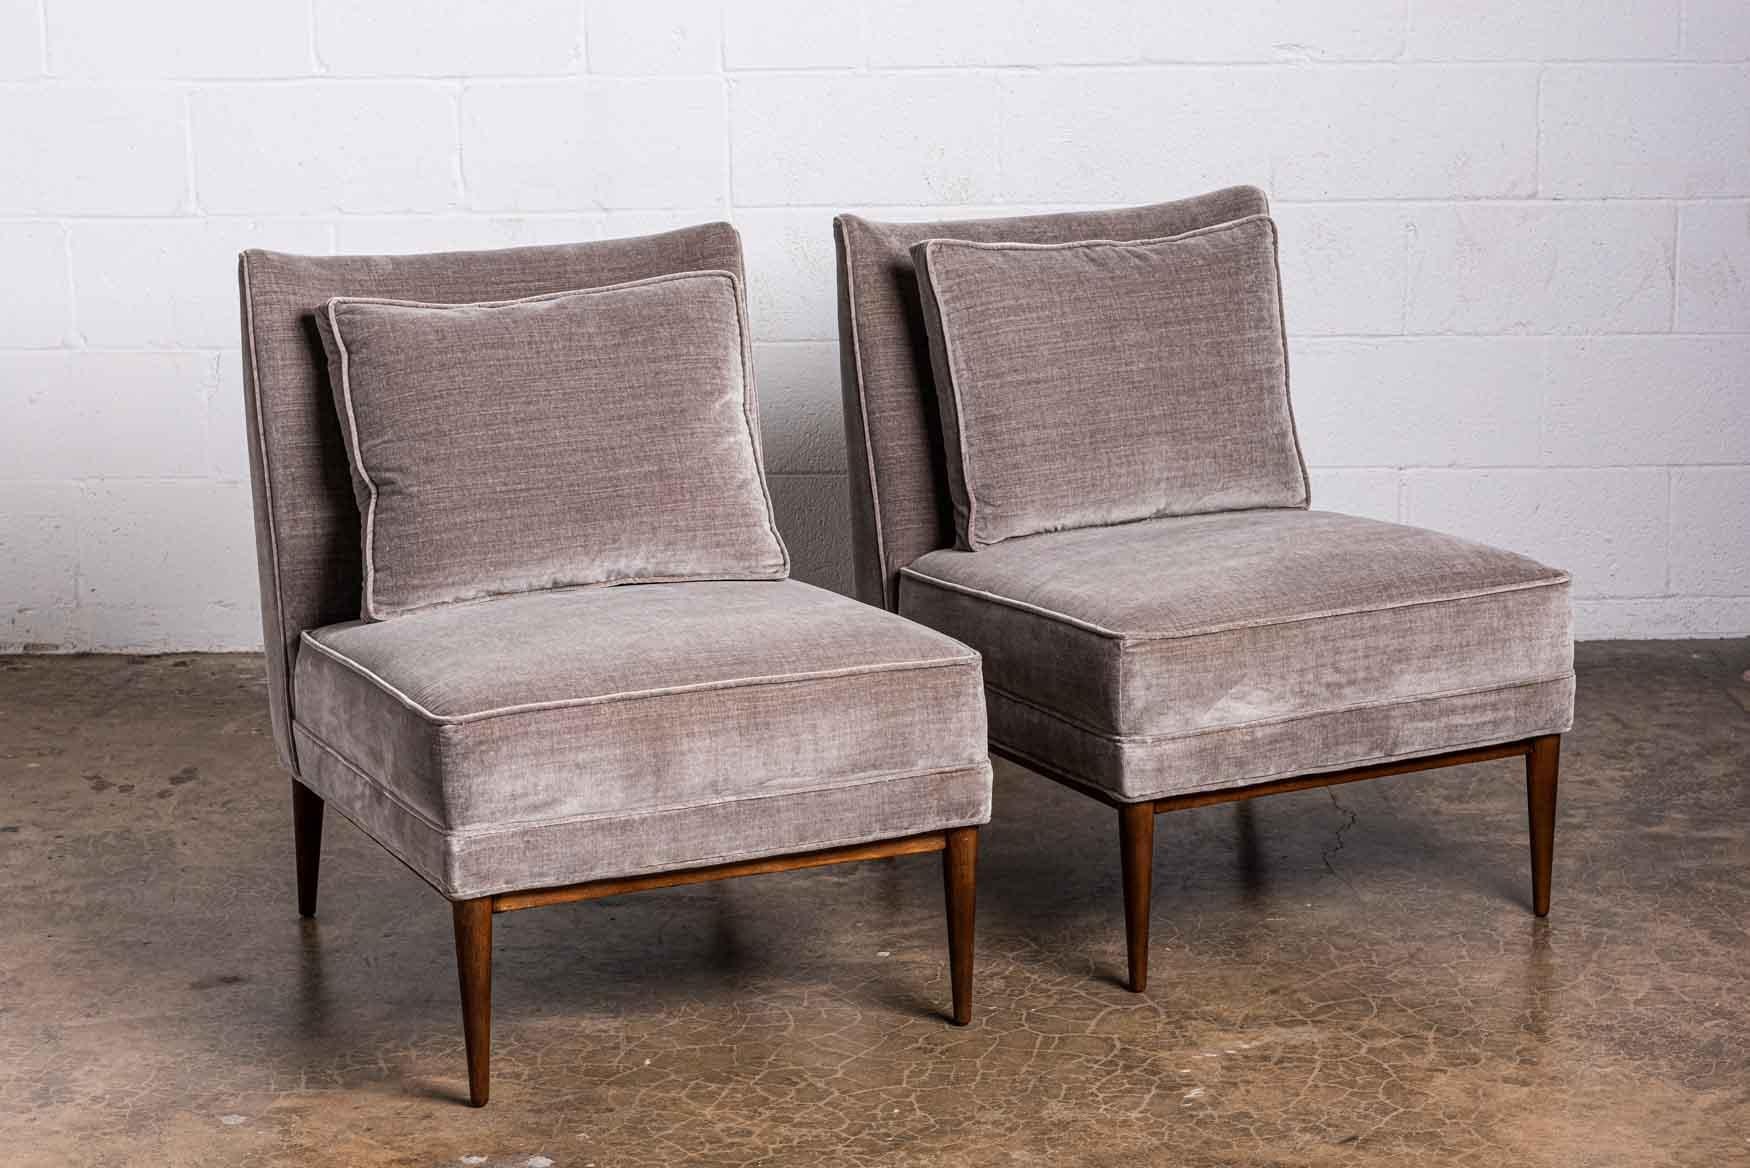 A pair of slipper chairs and ottoman designed by Paul McCobb. 

Chair: 23.5 x 32 D x 31.25 H / 16.5 SH
Ottoman: 24 x 19 x 15.5H.